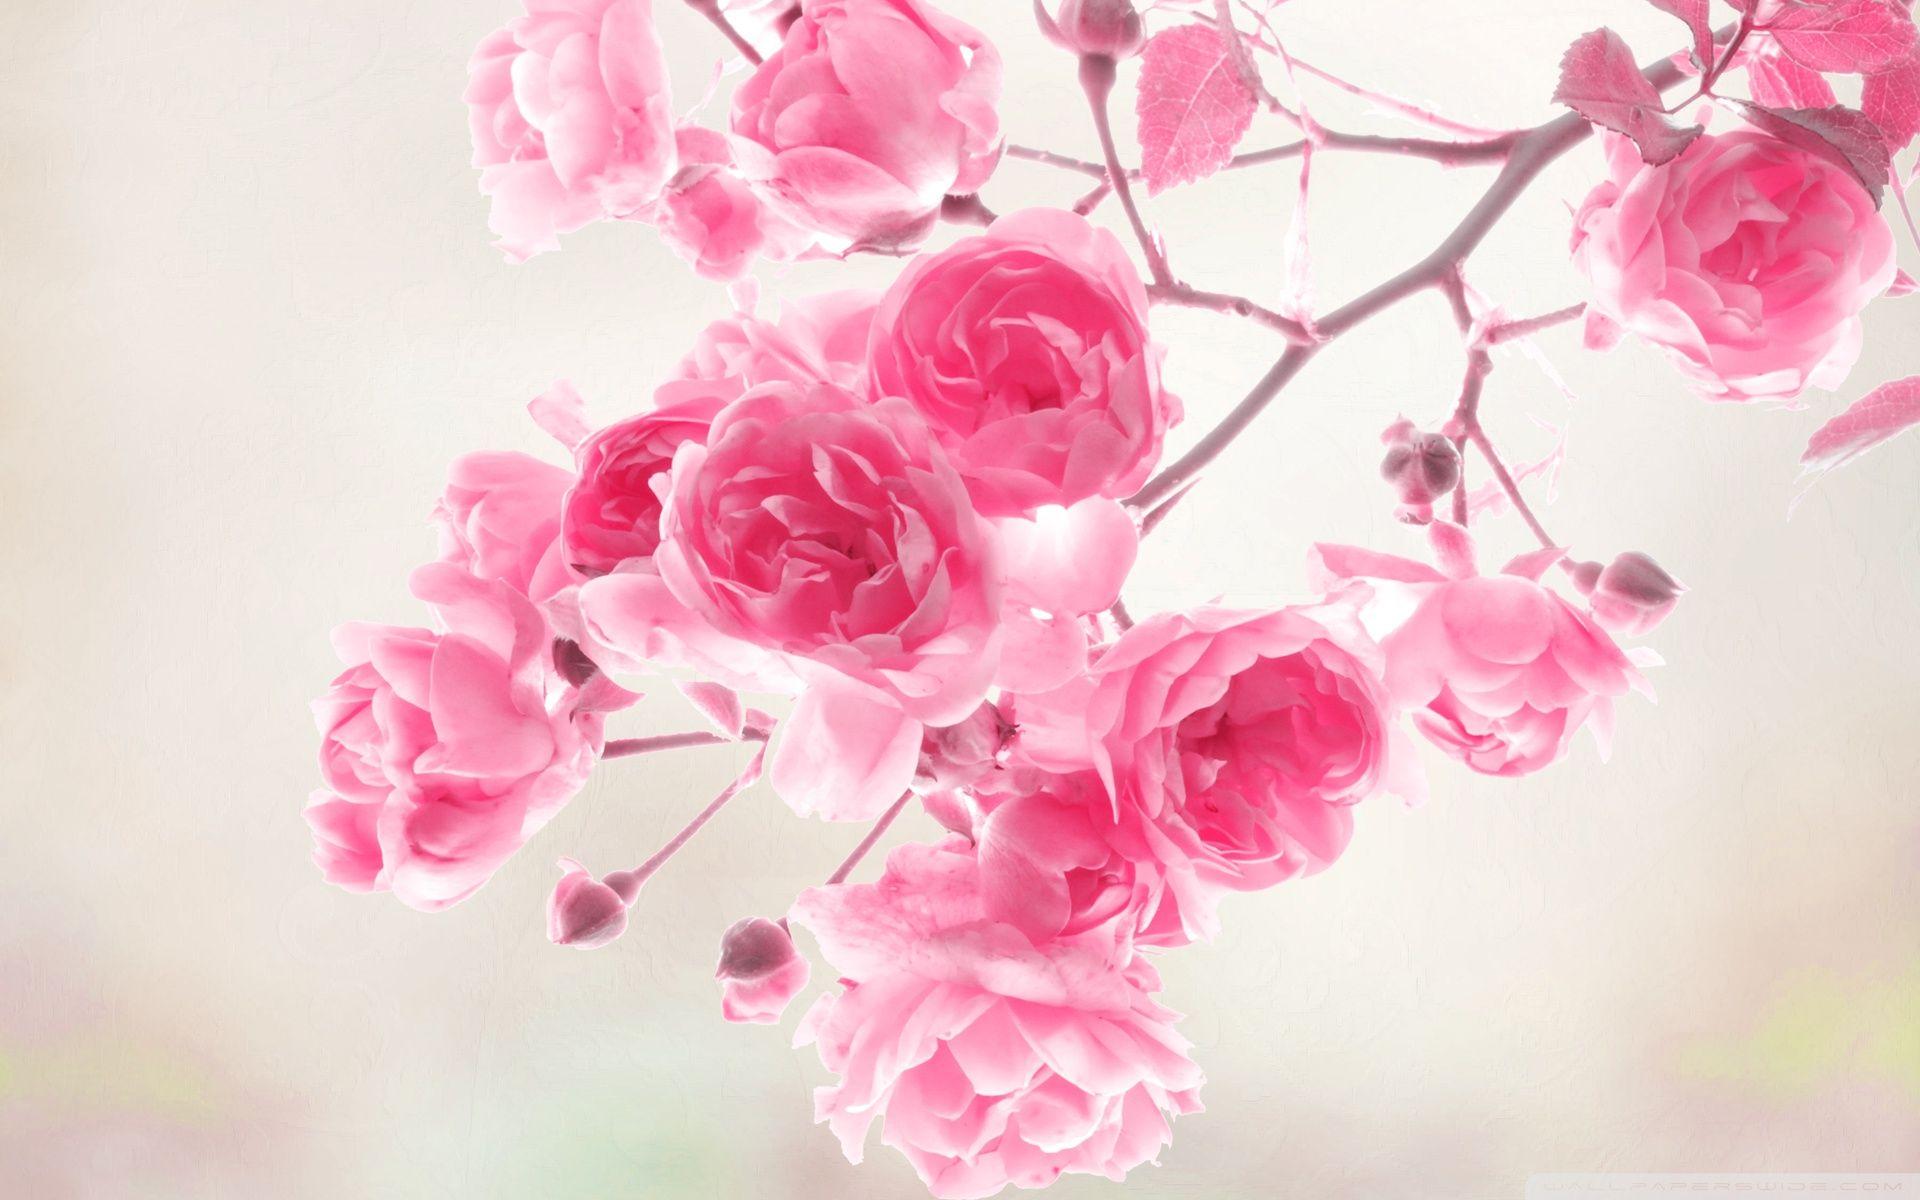 Rose Pink background desktophotos